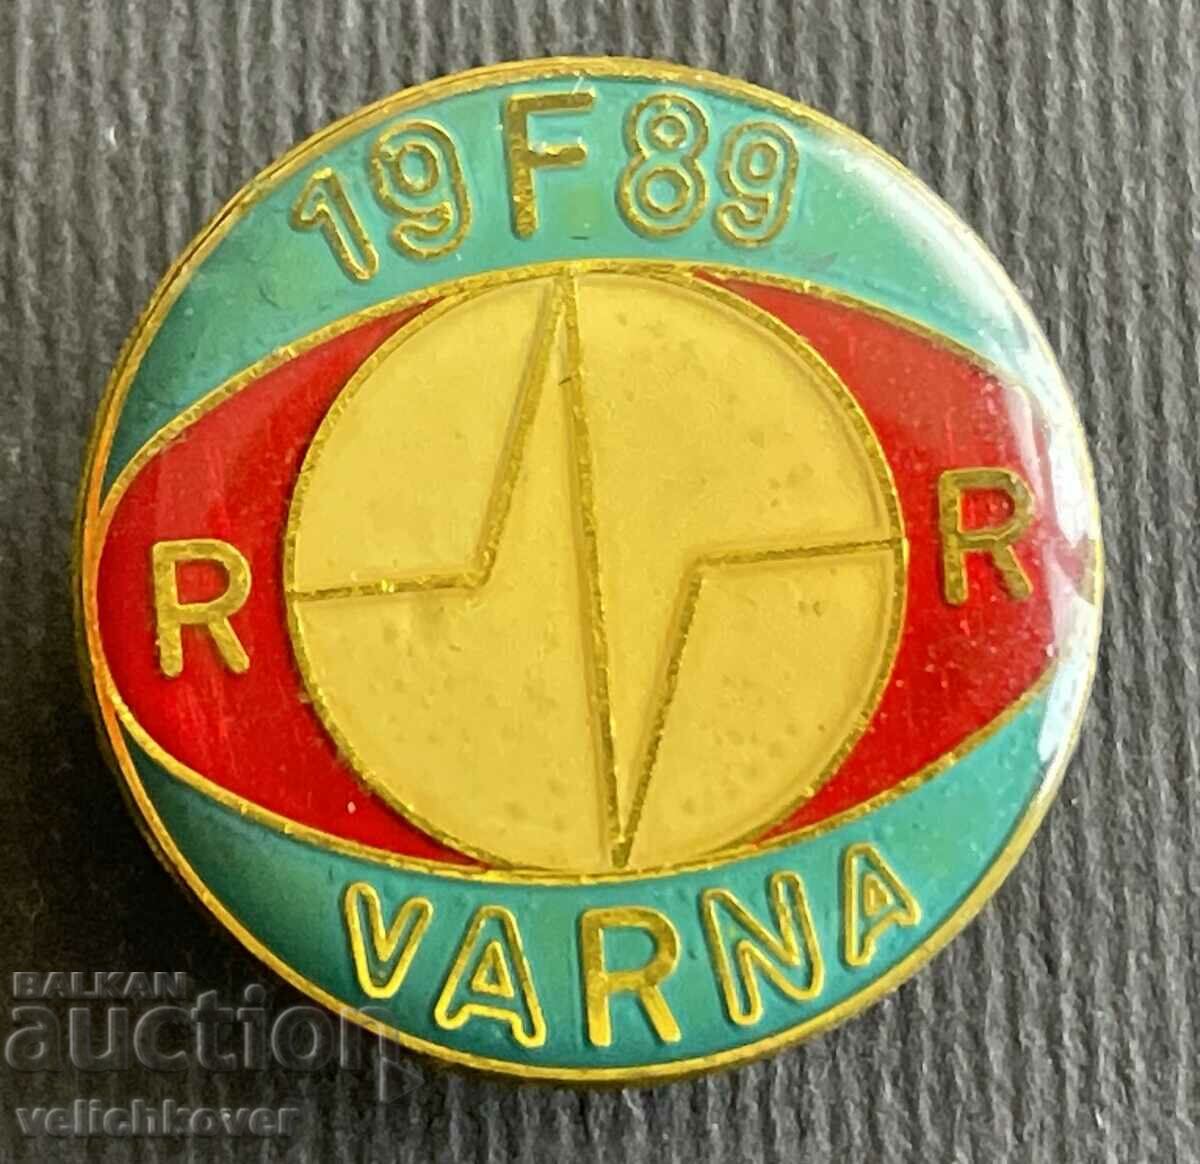 36466 Bulgaria sign Radio Varna 1989